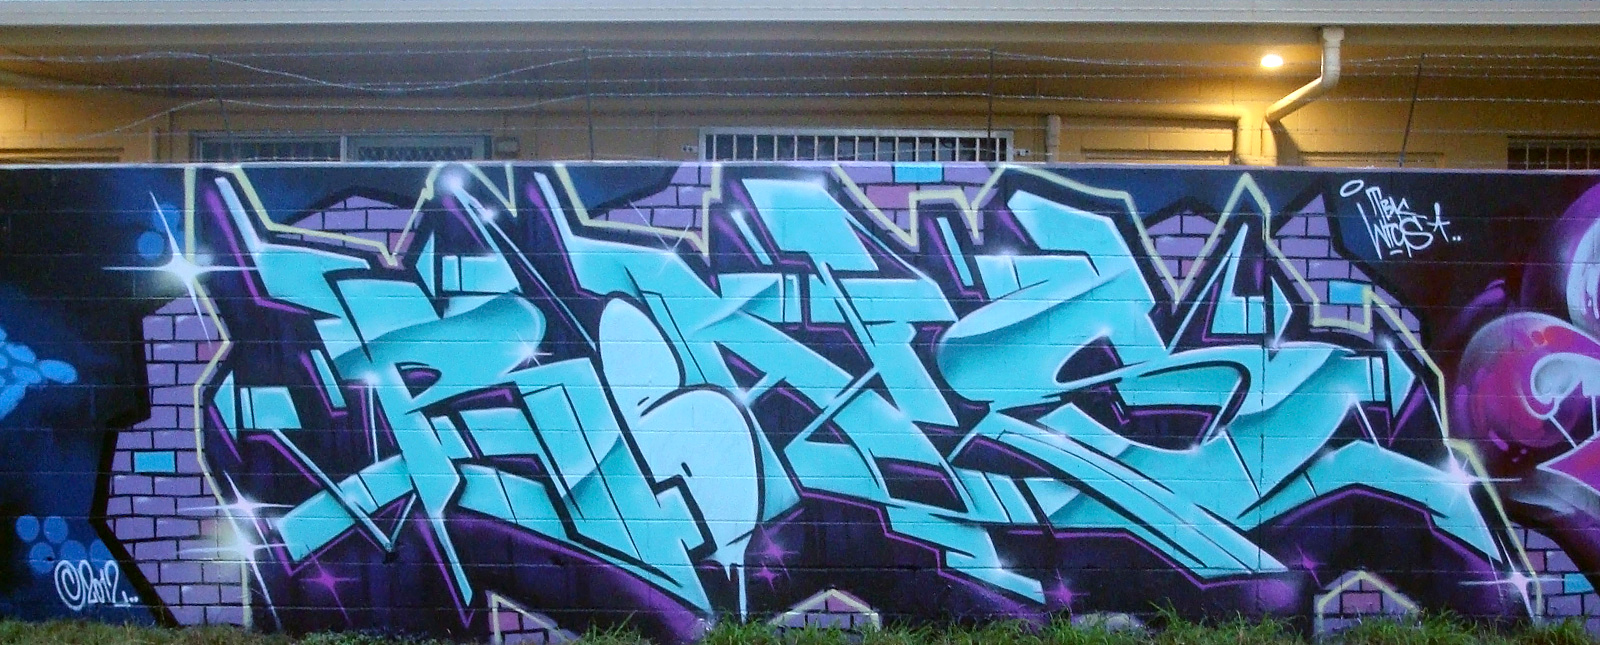 Reals, graffiti, Ironlak